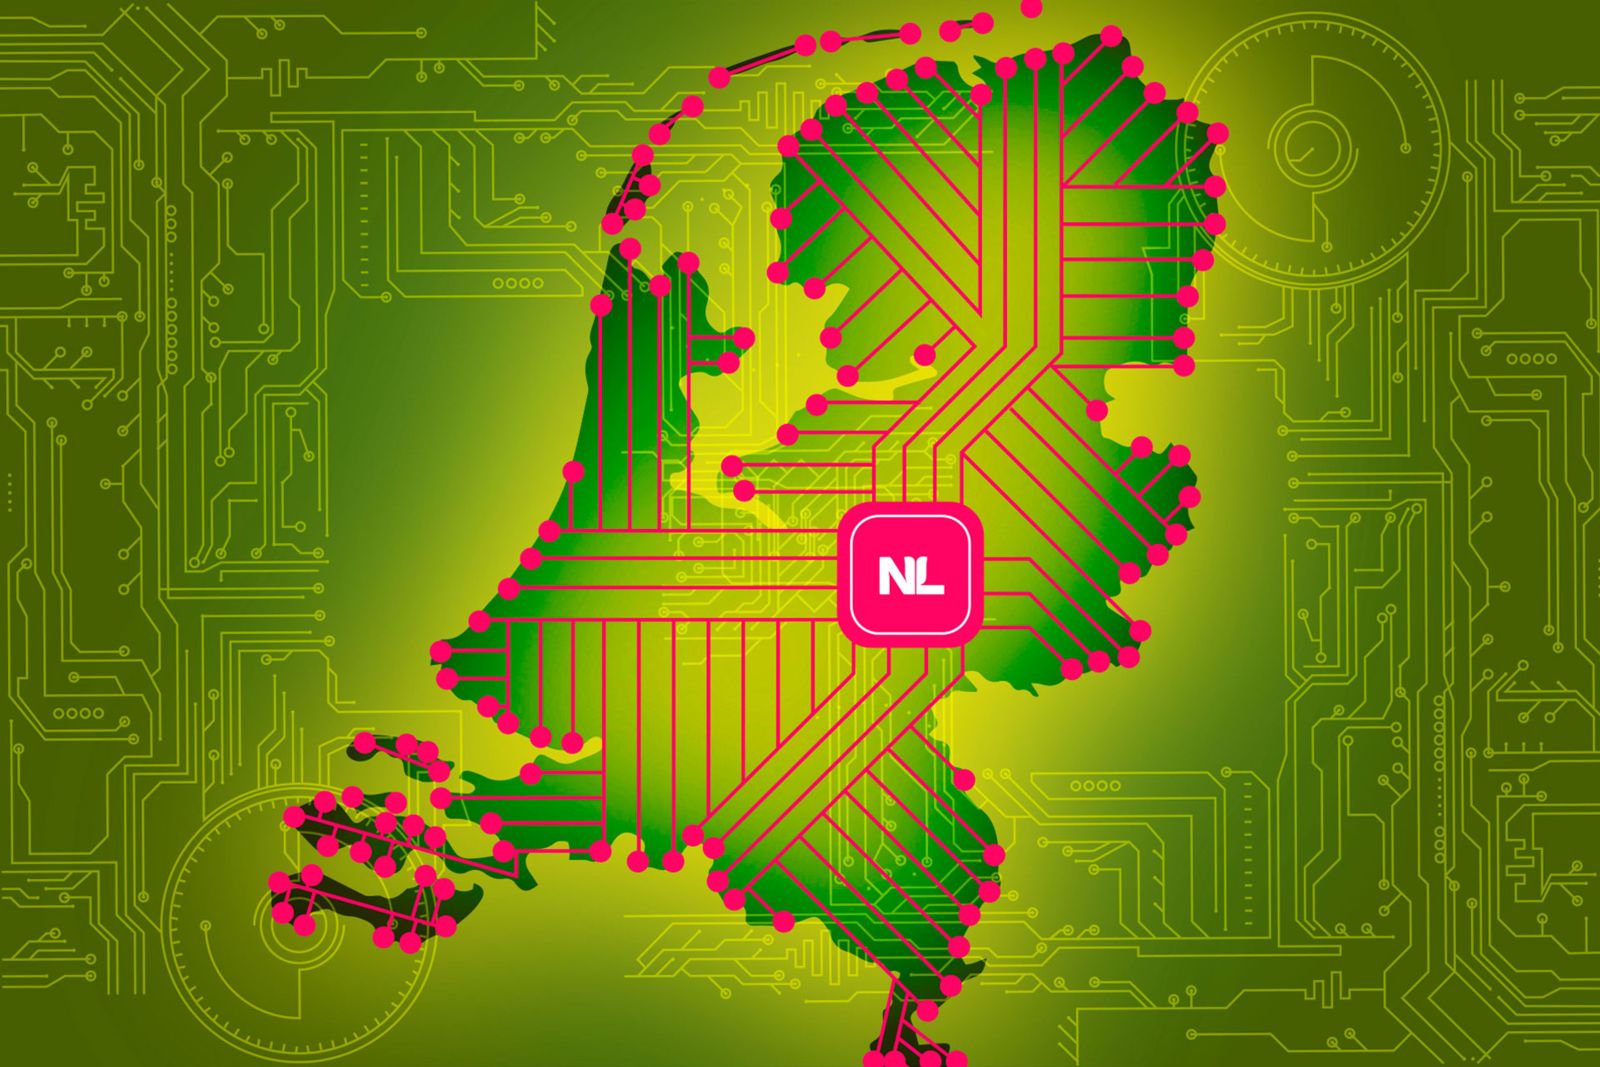 Una sentencia histórica de los Países Bajos sobre los estados de bienestar digitales y los derechos humanos